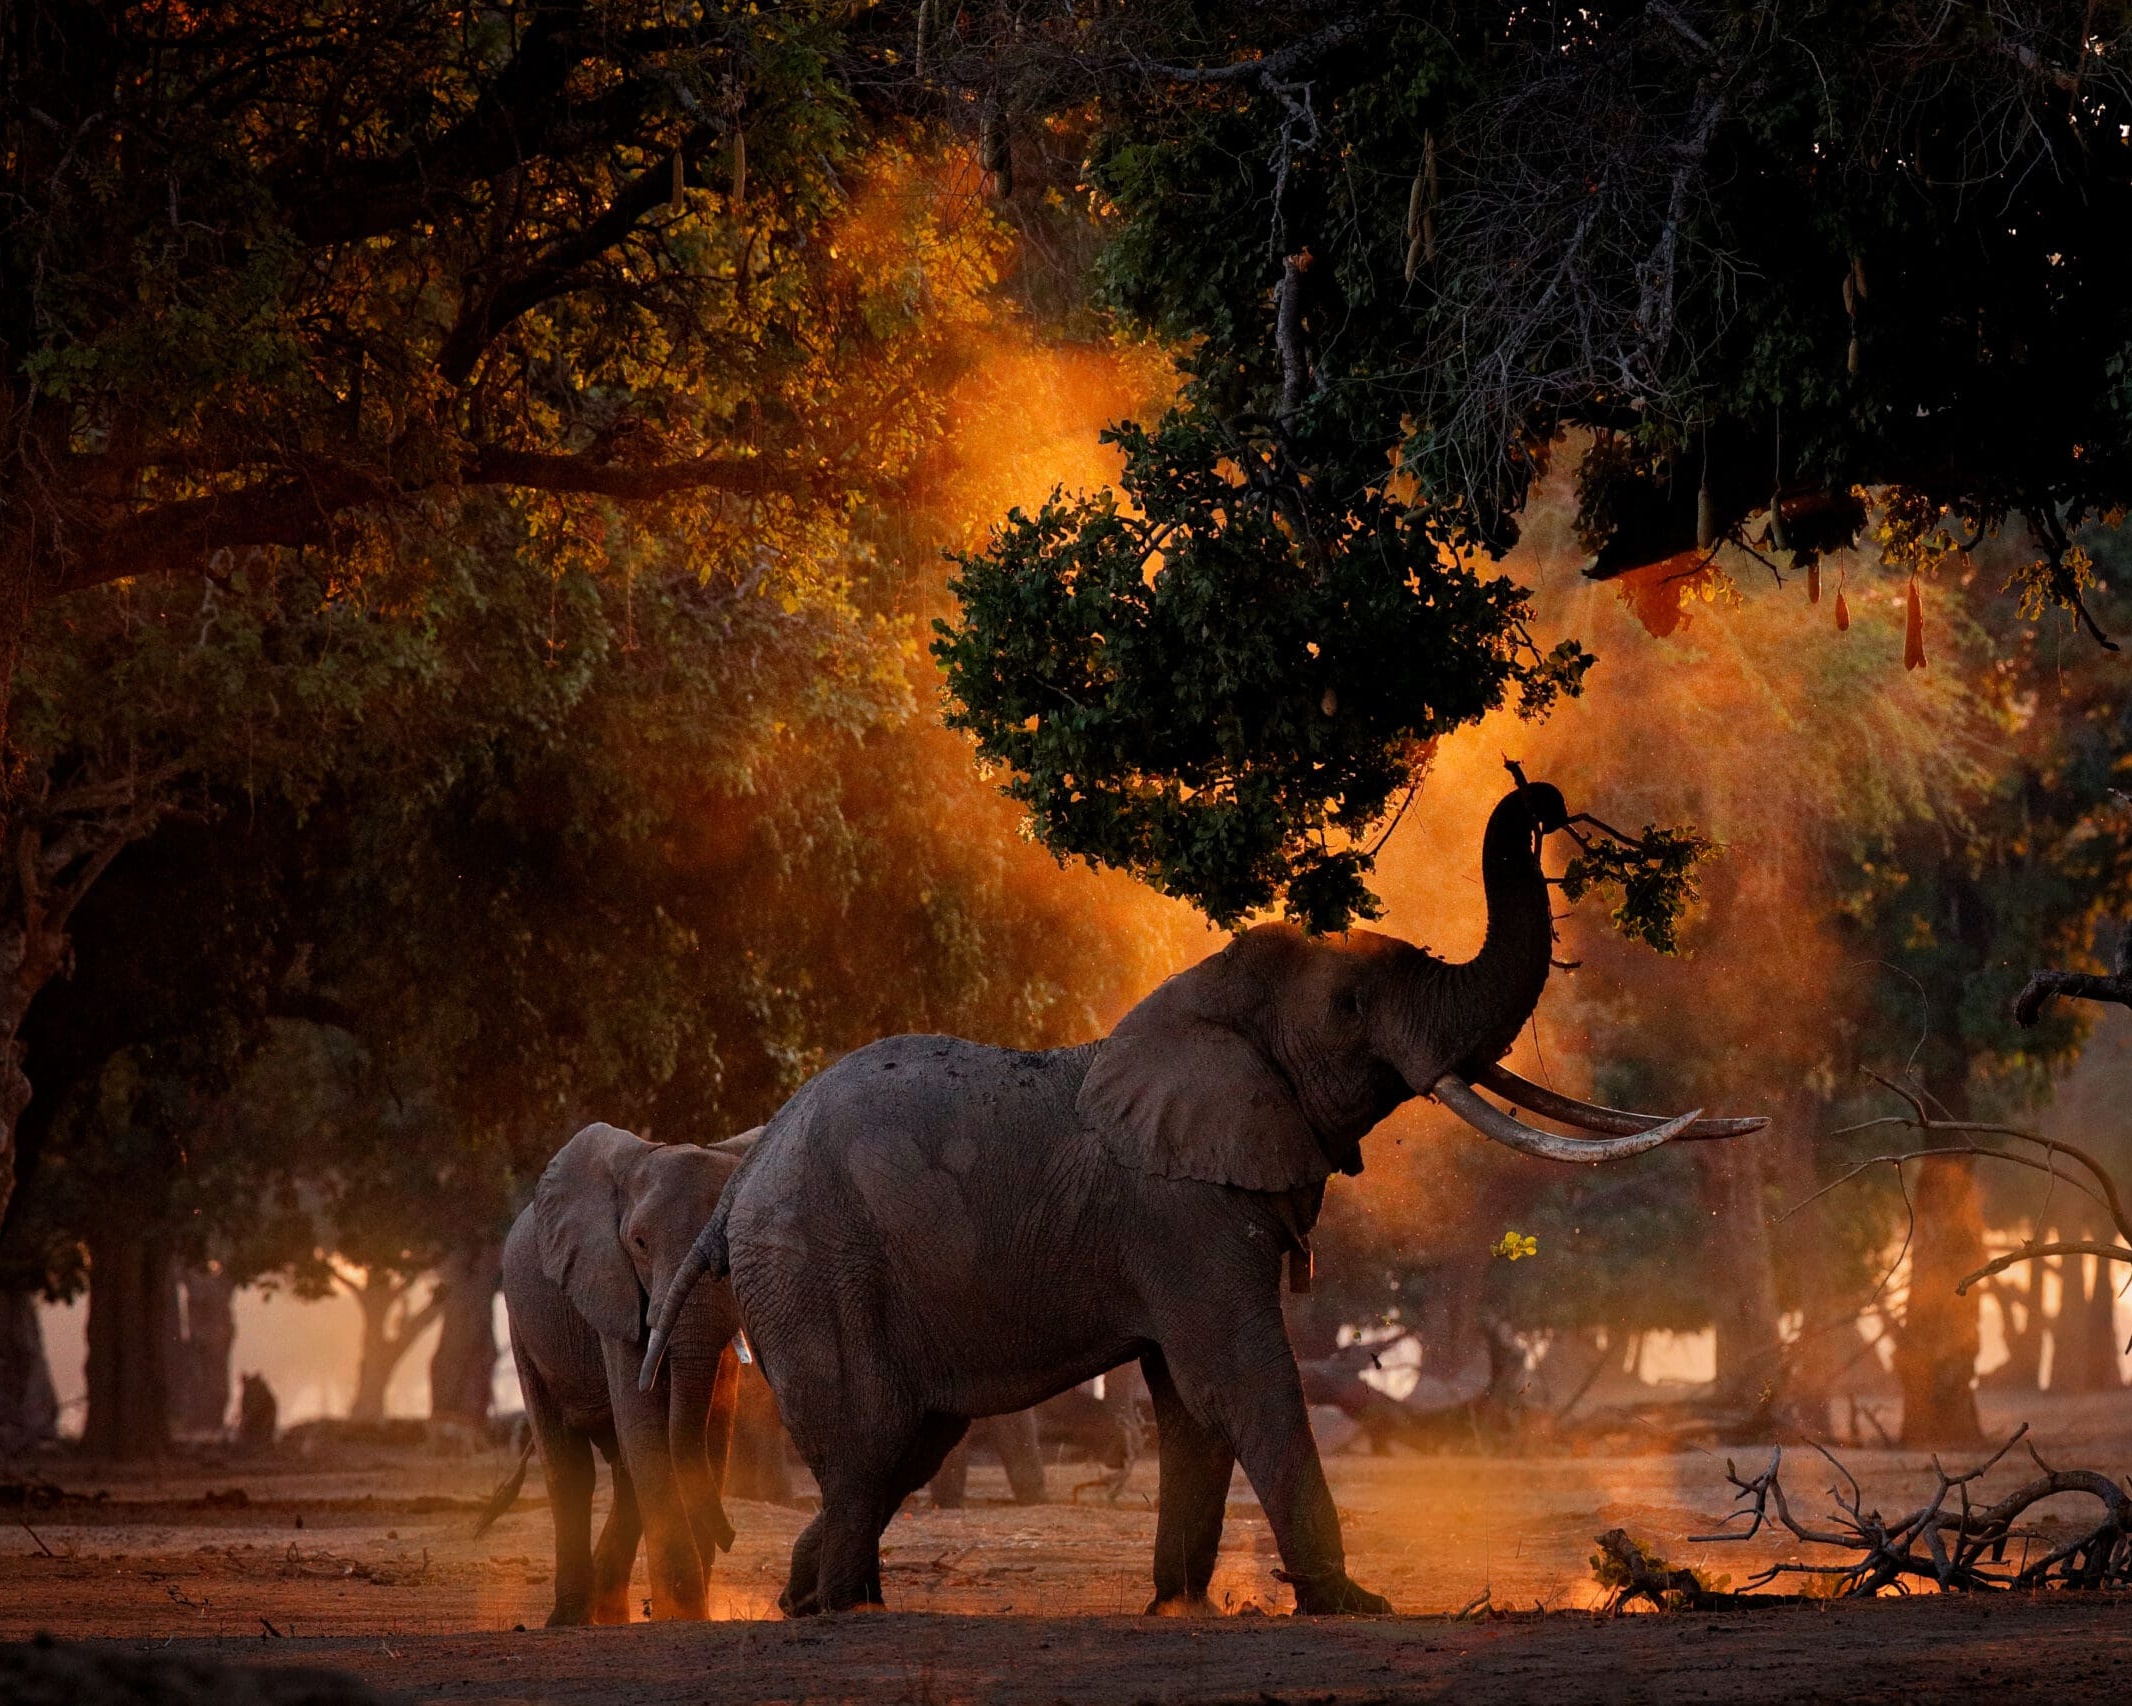 Elephants at mana pools national park, zimbabwe